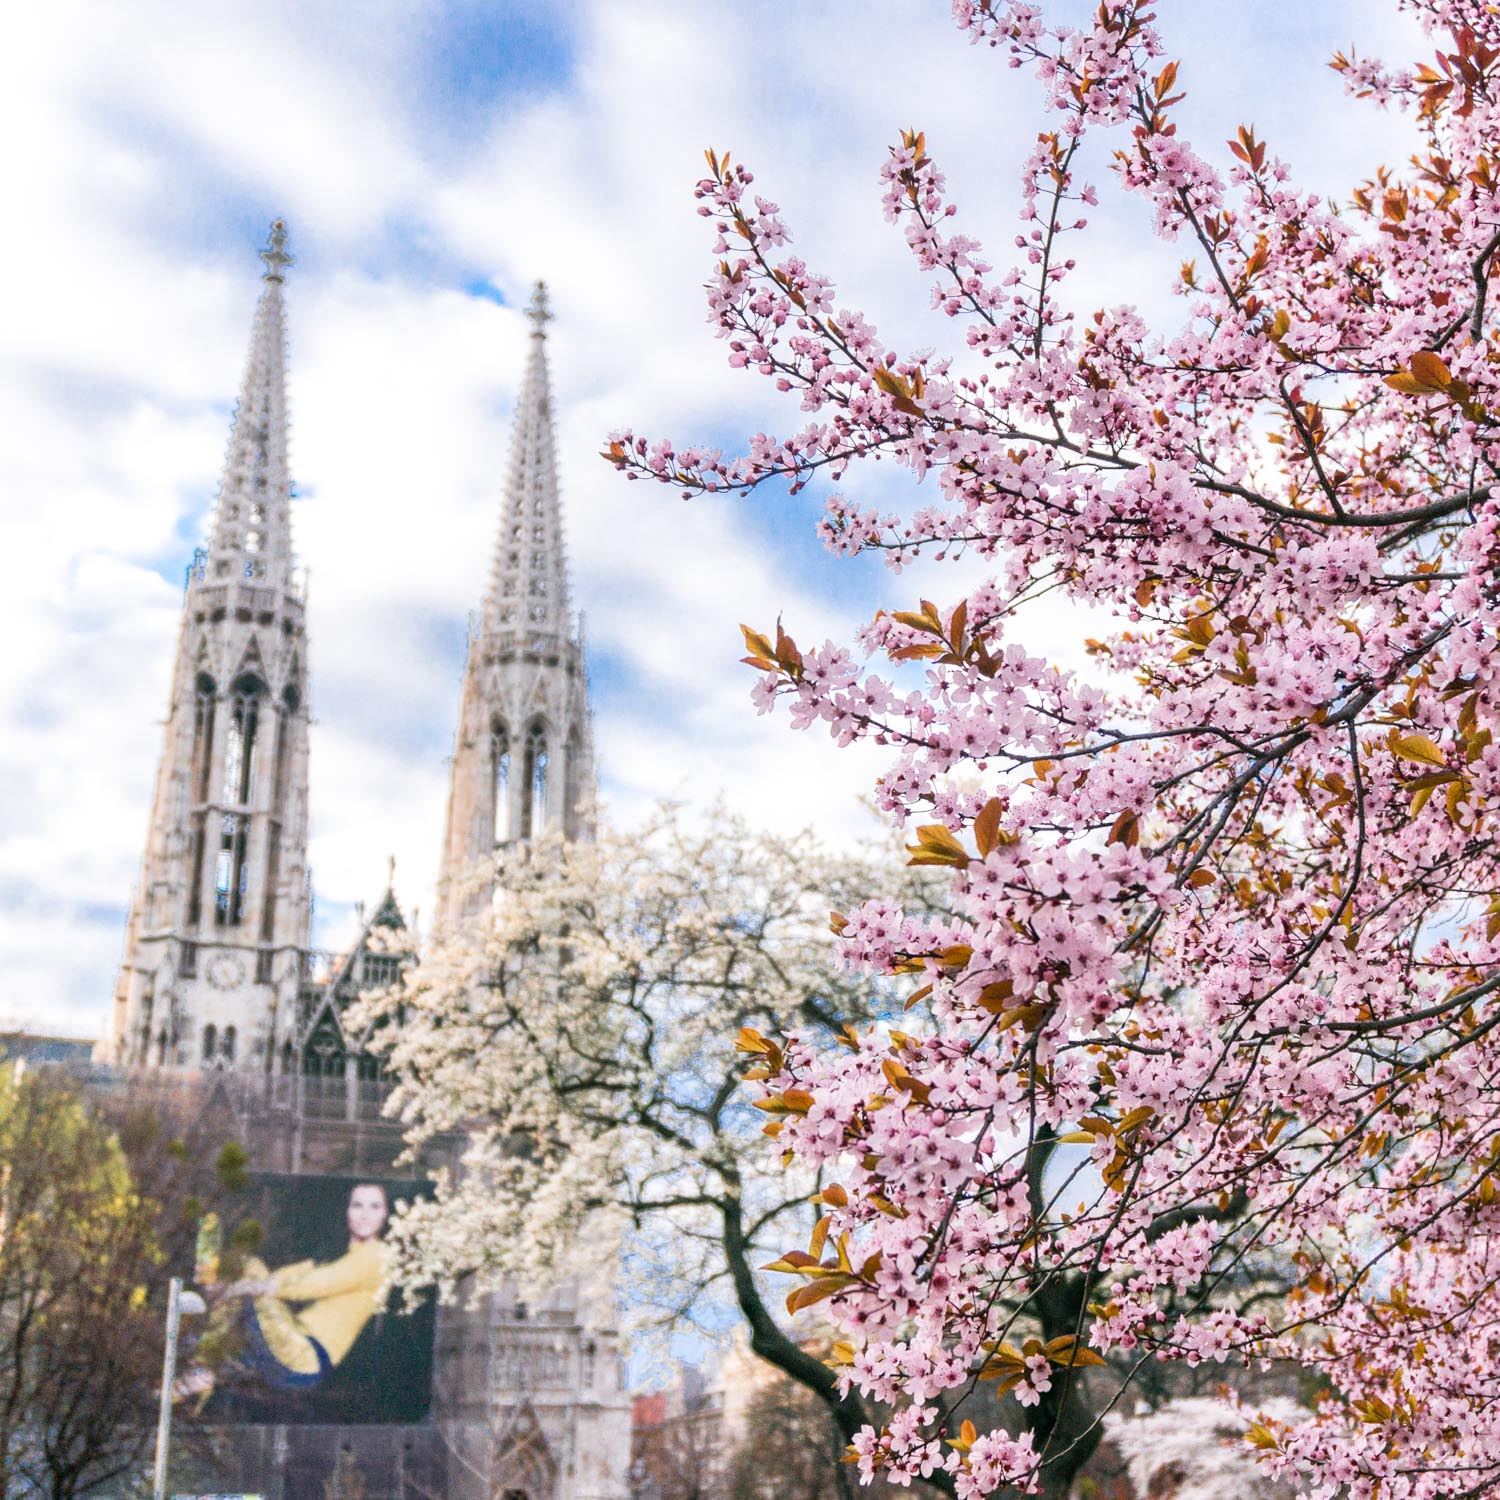 Easter in Vienna – Saturday afternoon wanderings